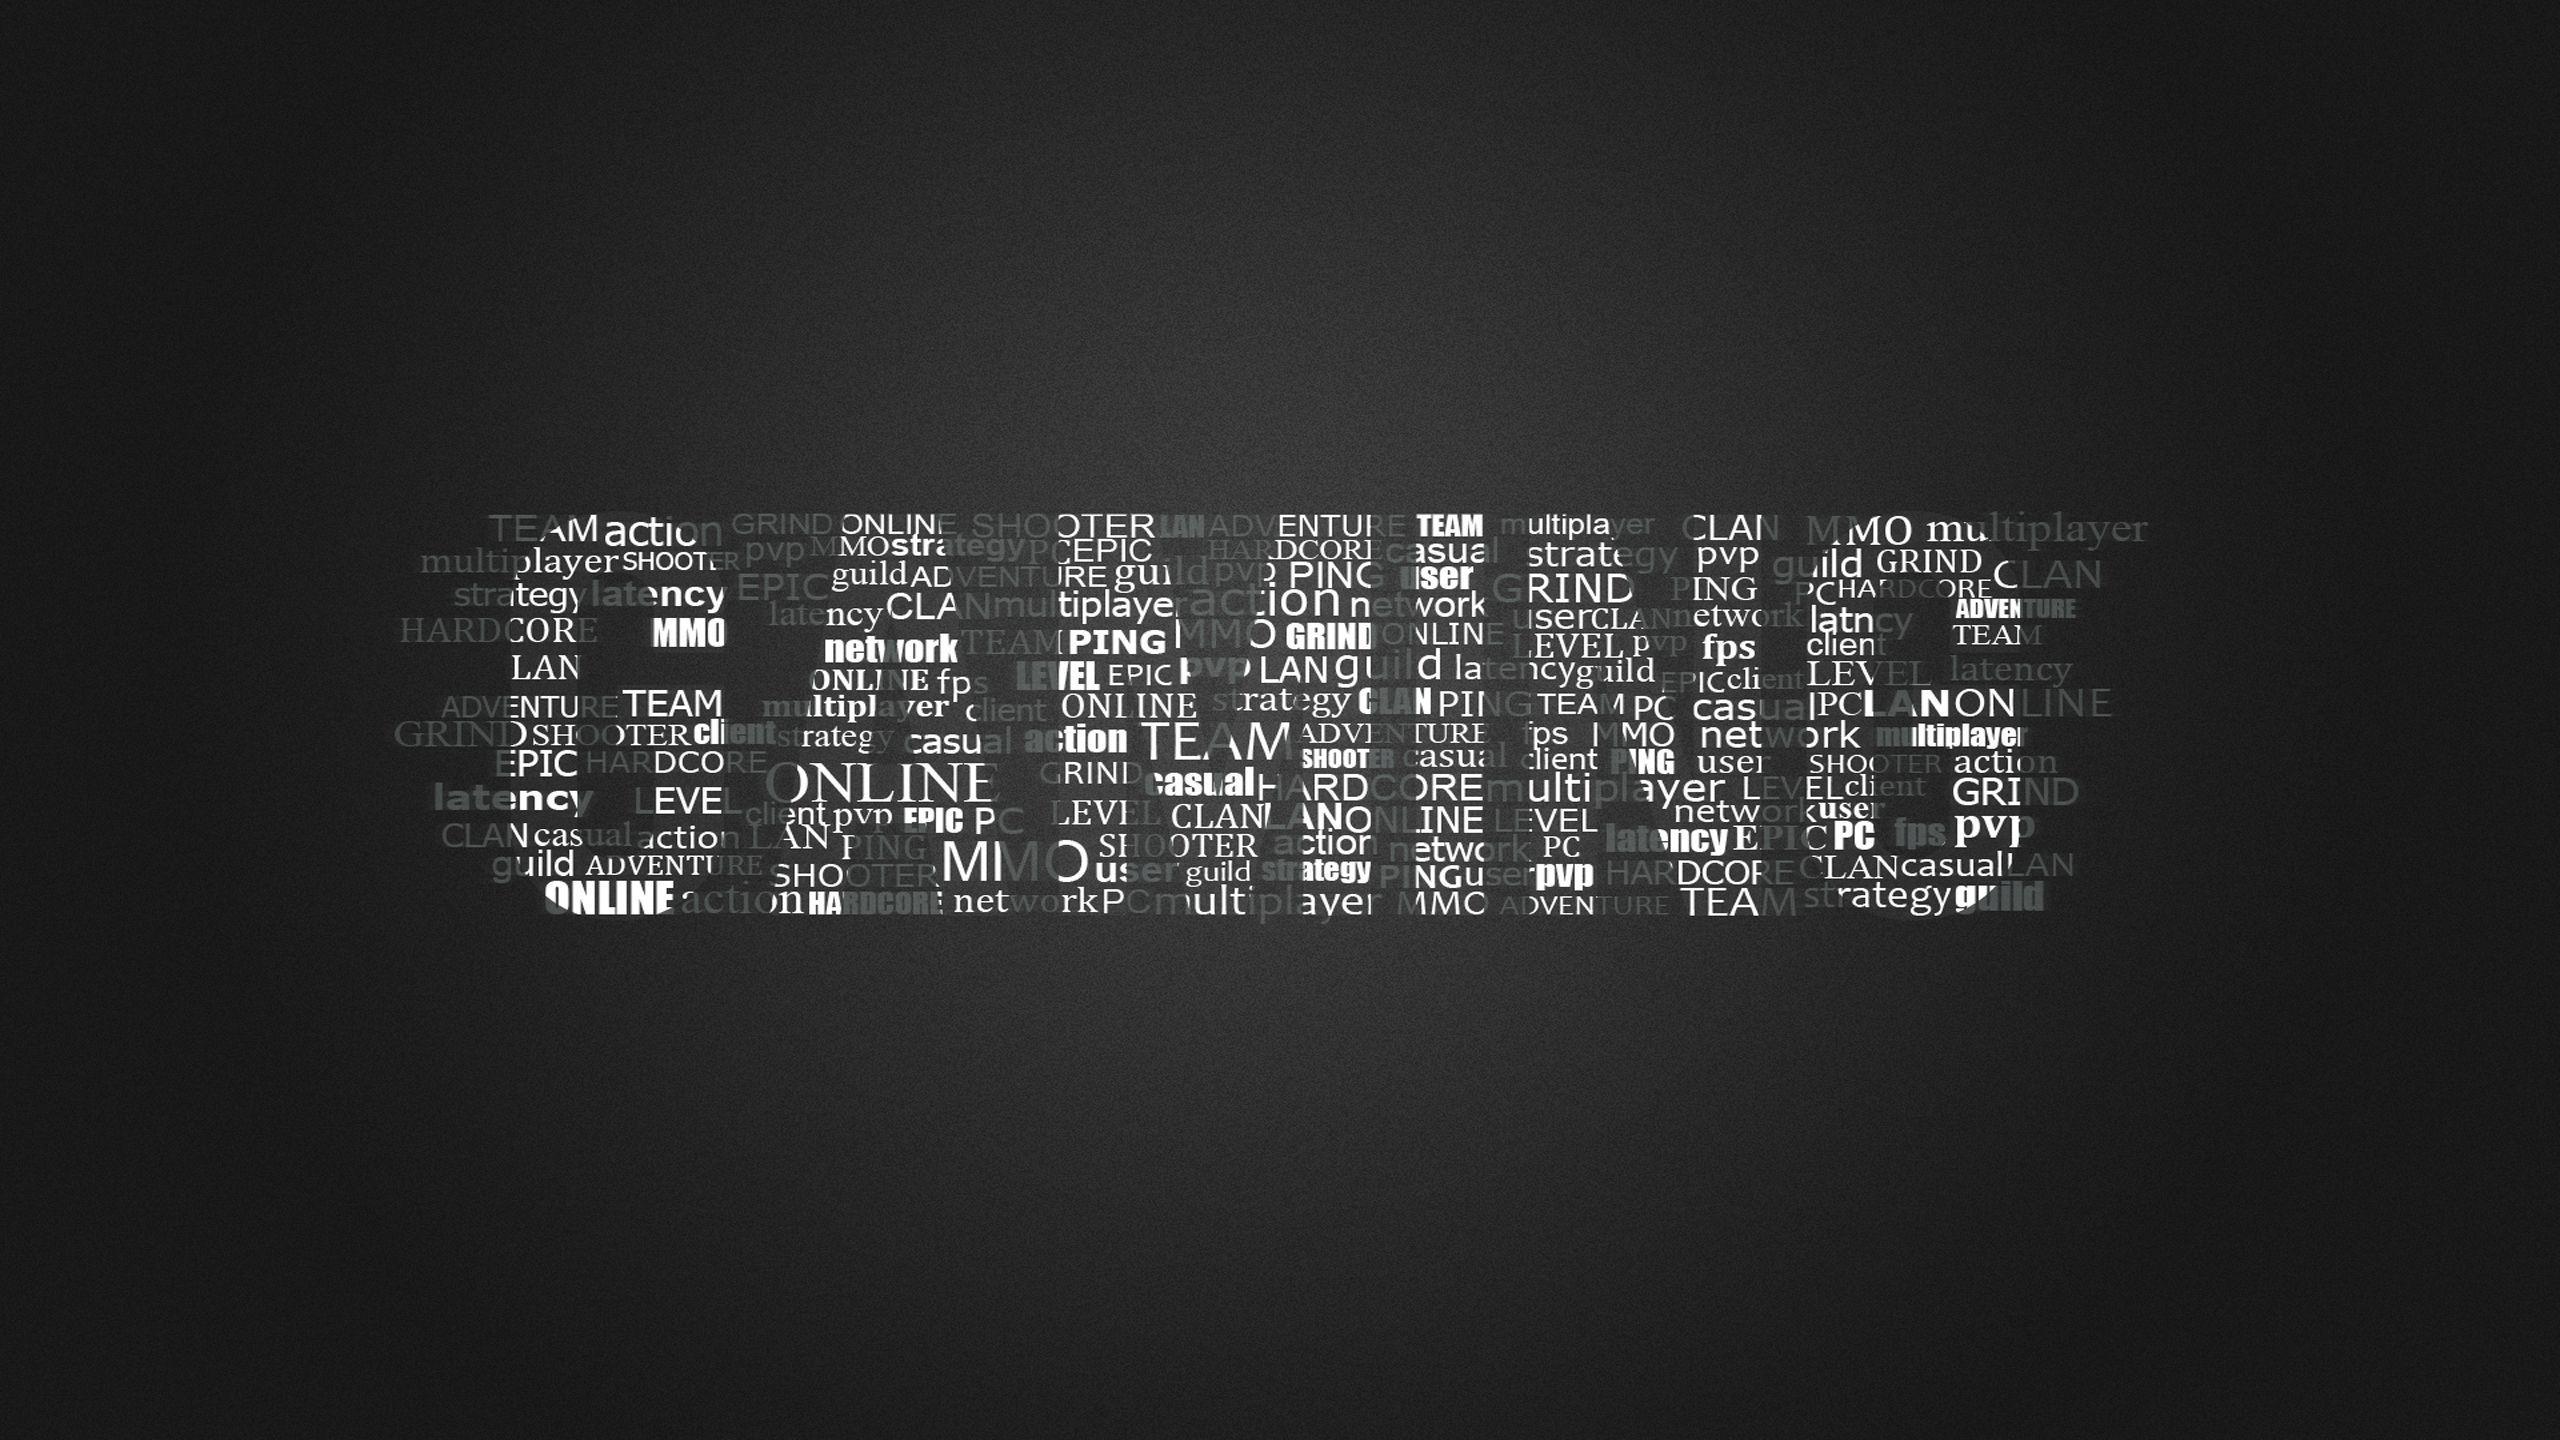 gamers logo wallpaper 10. HD Wallpaper Buzz